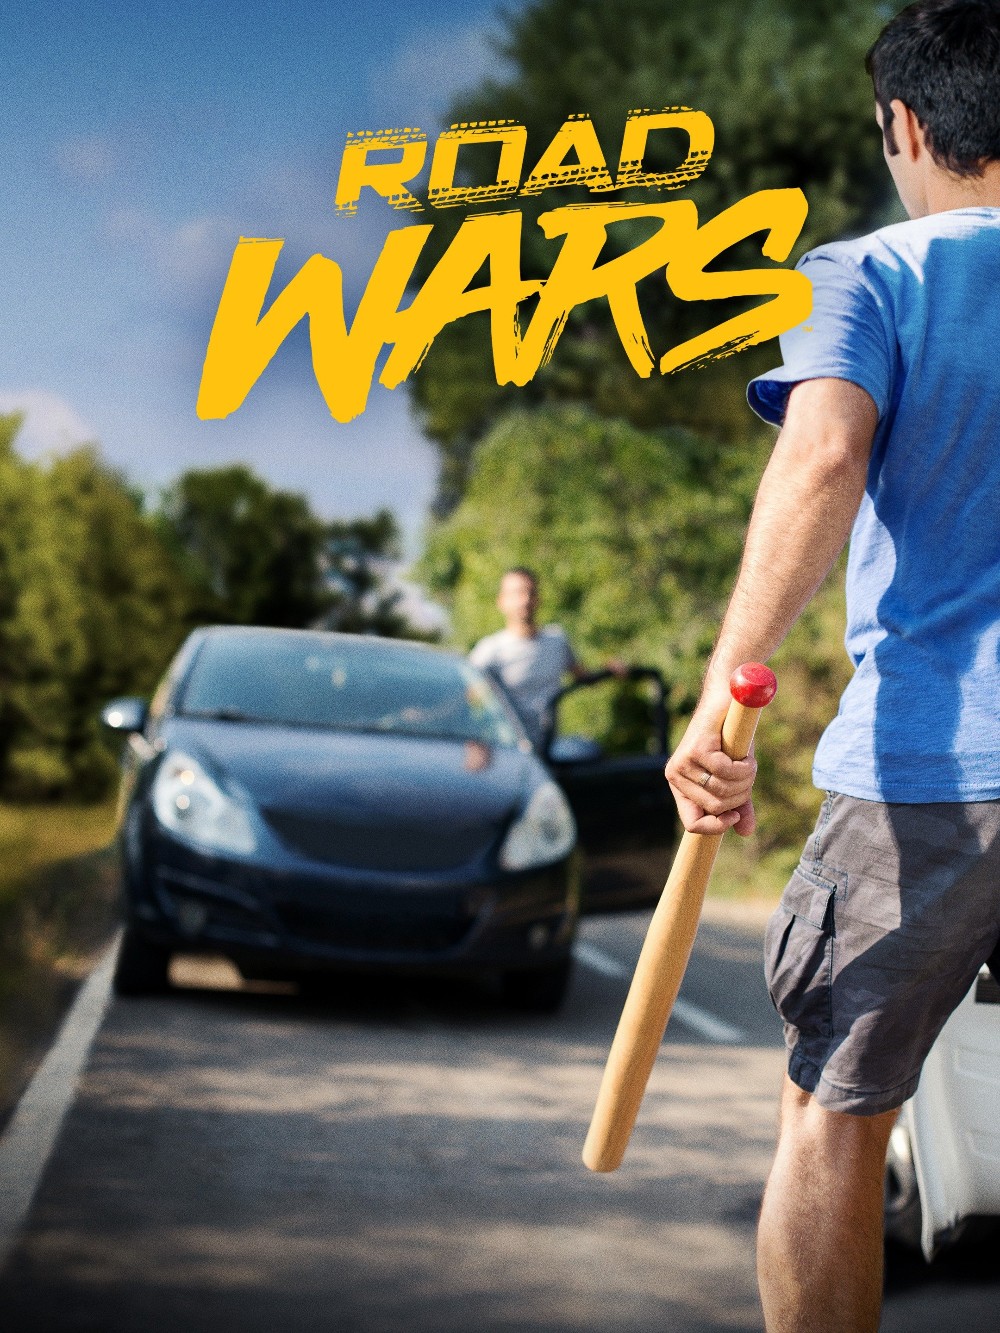 Road Wars 2022 S03E07 [1080p] (x265) F169113e1ba78a122409b24a1c6a8ce1